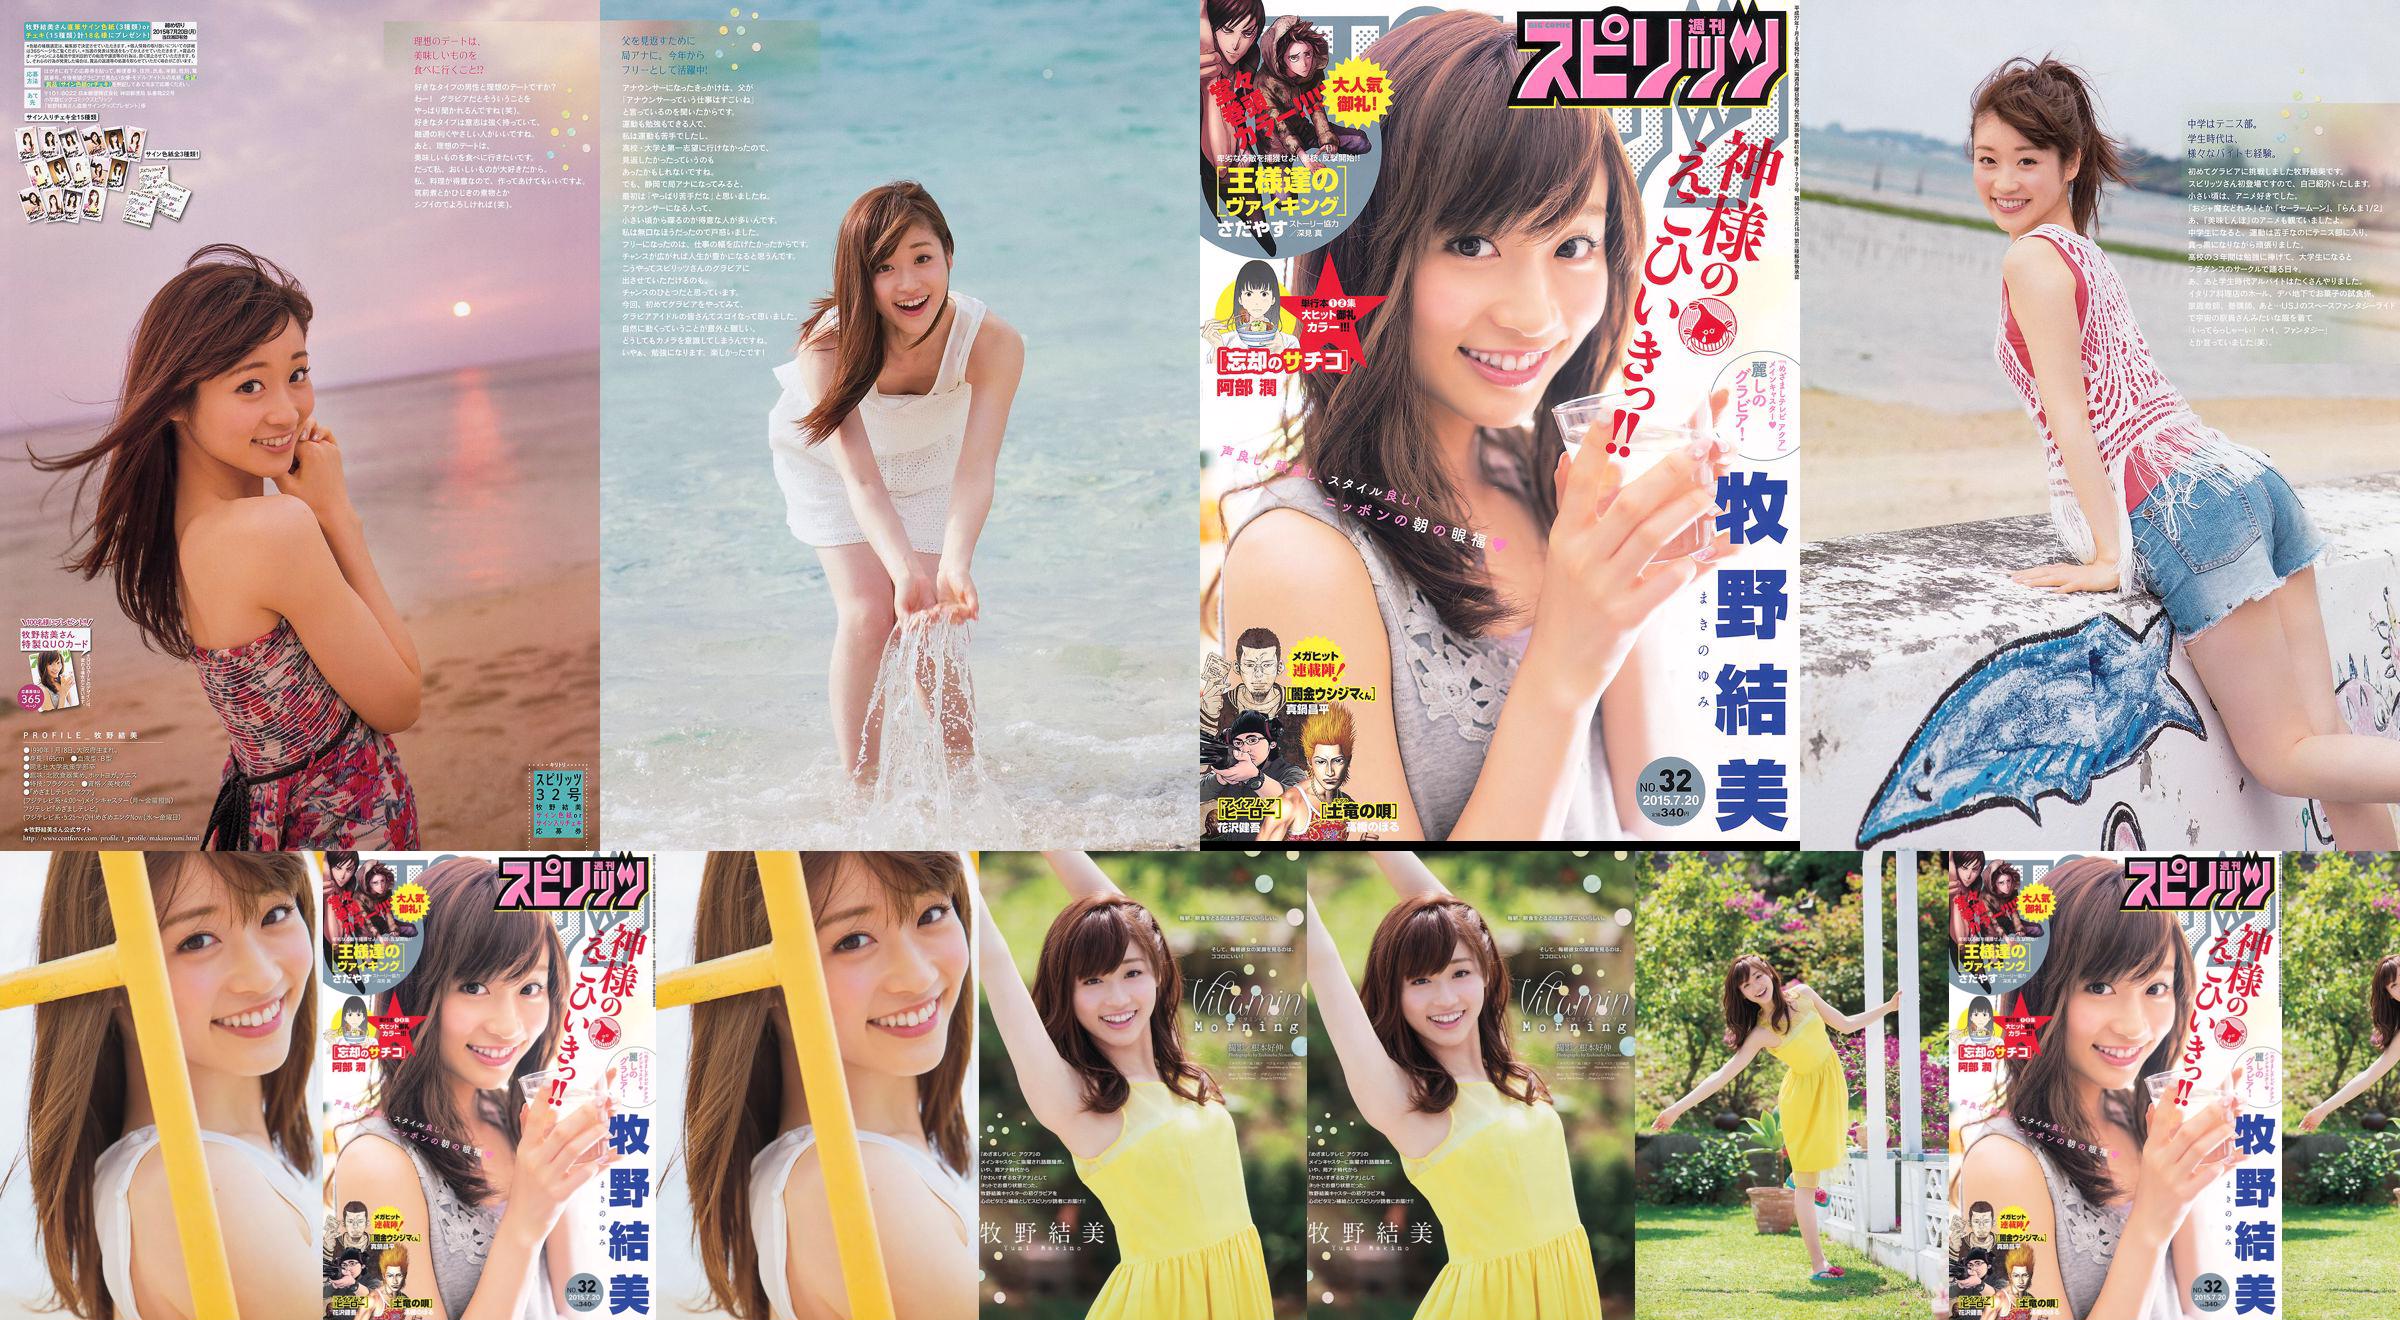 [Weekly Big Comic Spirits] Yumi Makino 2015 No.32 Photo Magazine No.36786a หน้า 1